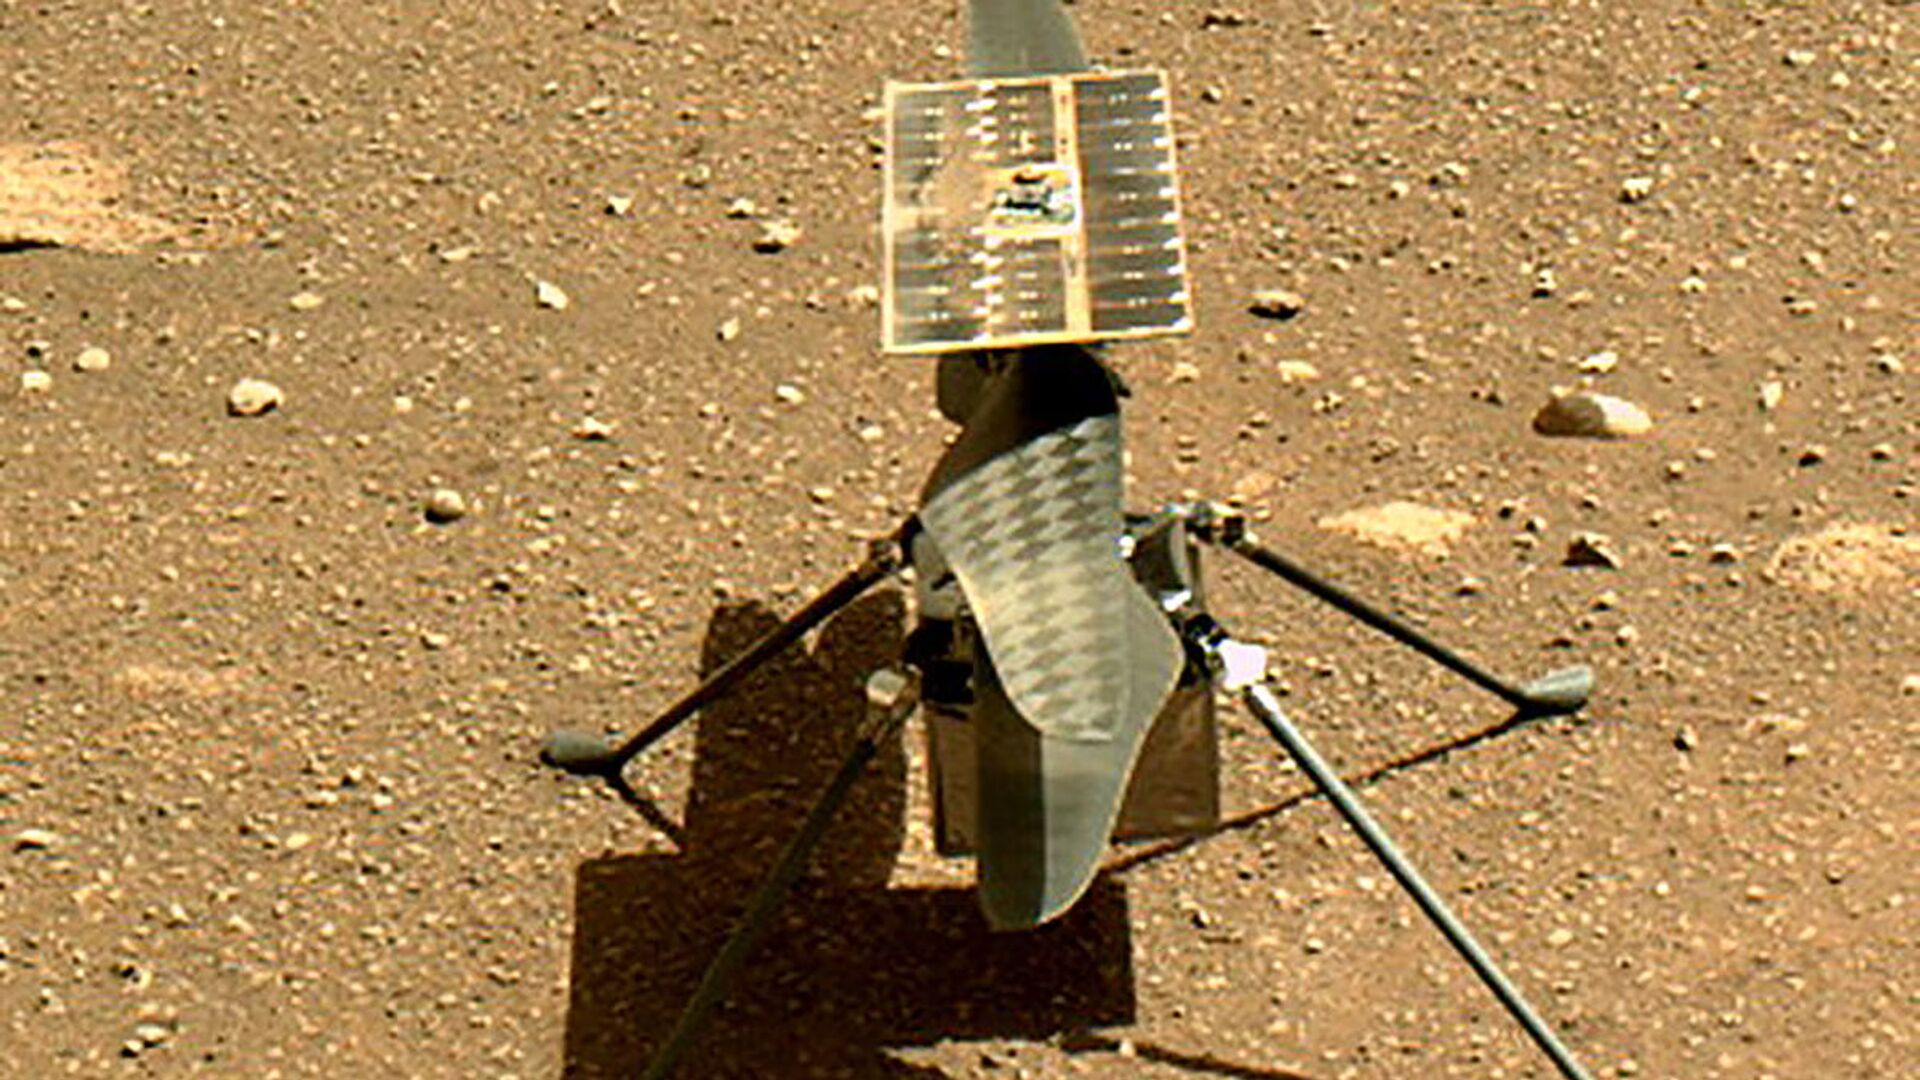 وكالة الفضاء الأمريكية ناسا تطلق أول طائرة حوامة إنجينيويتي فوق سطح كوكب المريخ - سبوتنيك عربي, 1920, 21.04.2021